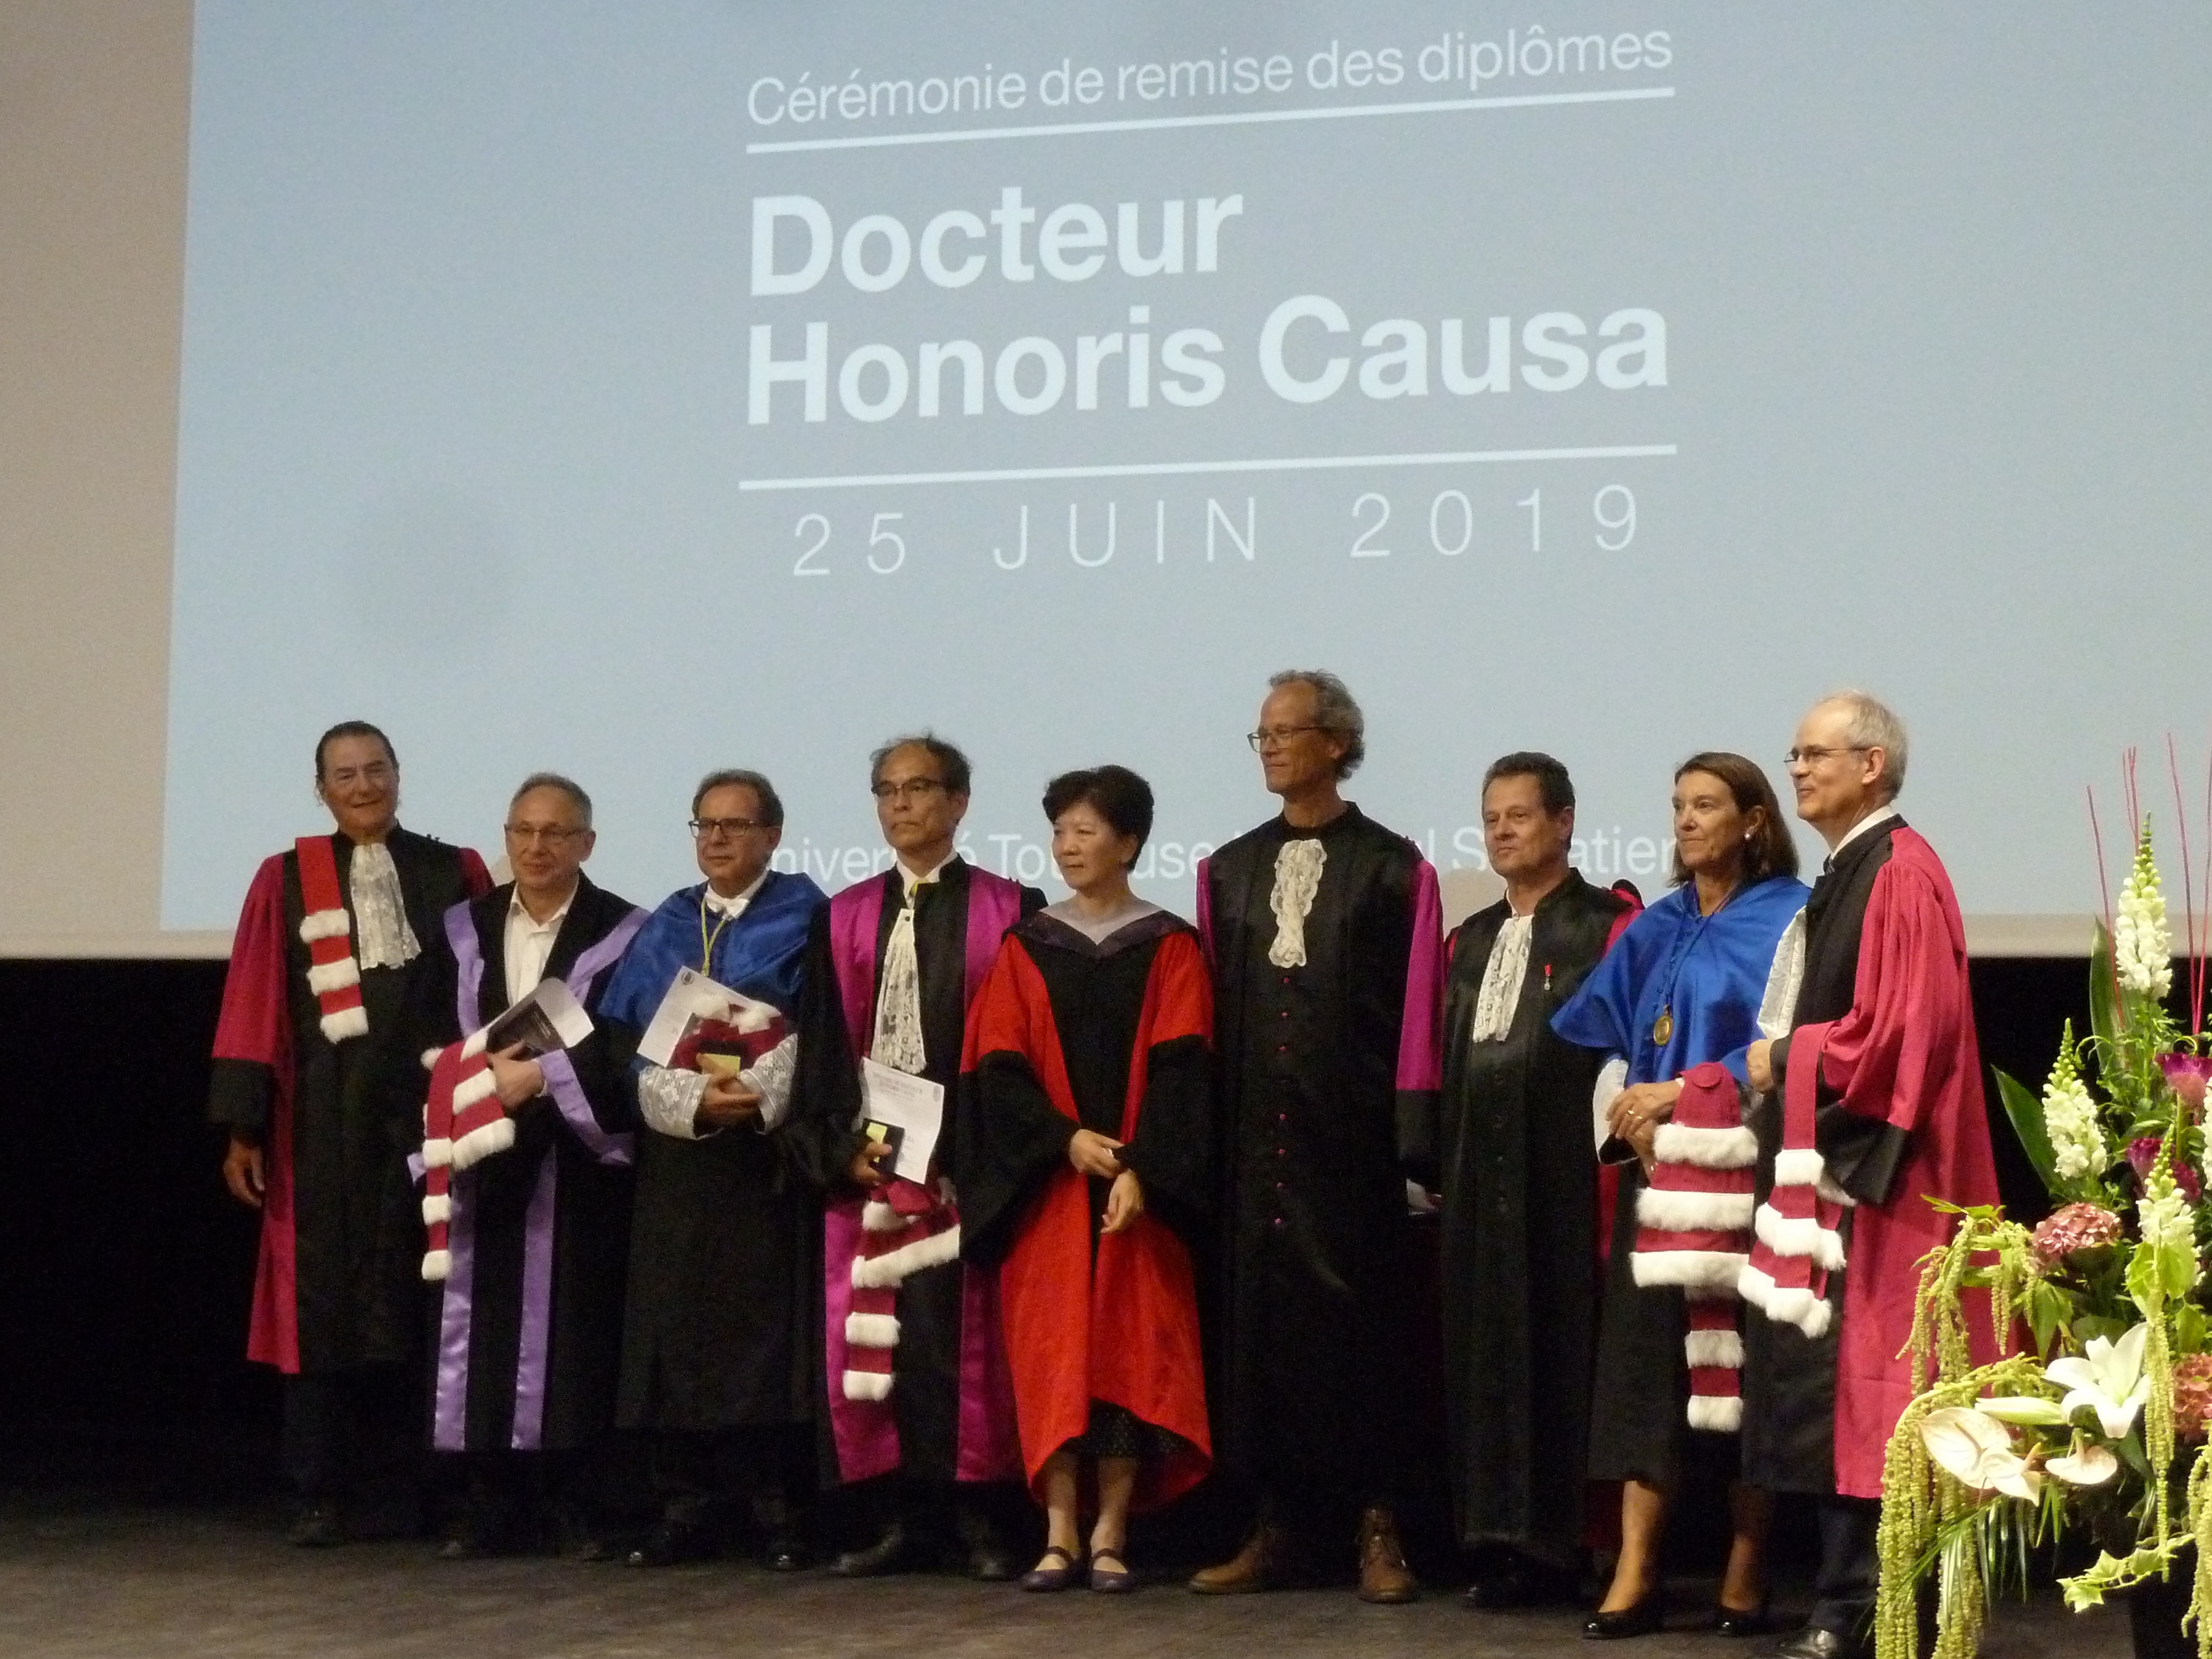 Verleihung der Ehrendoktorwürde in Toulouse